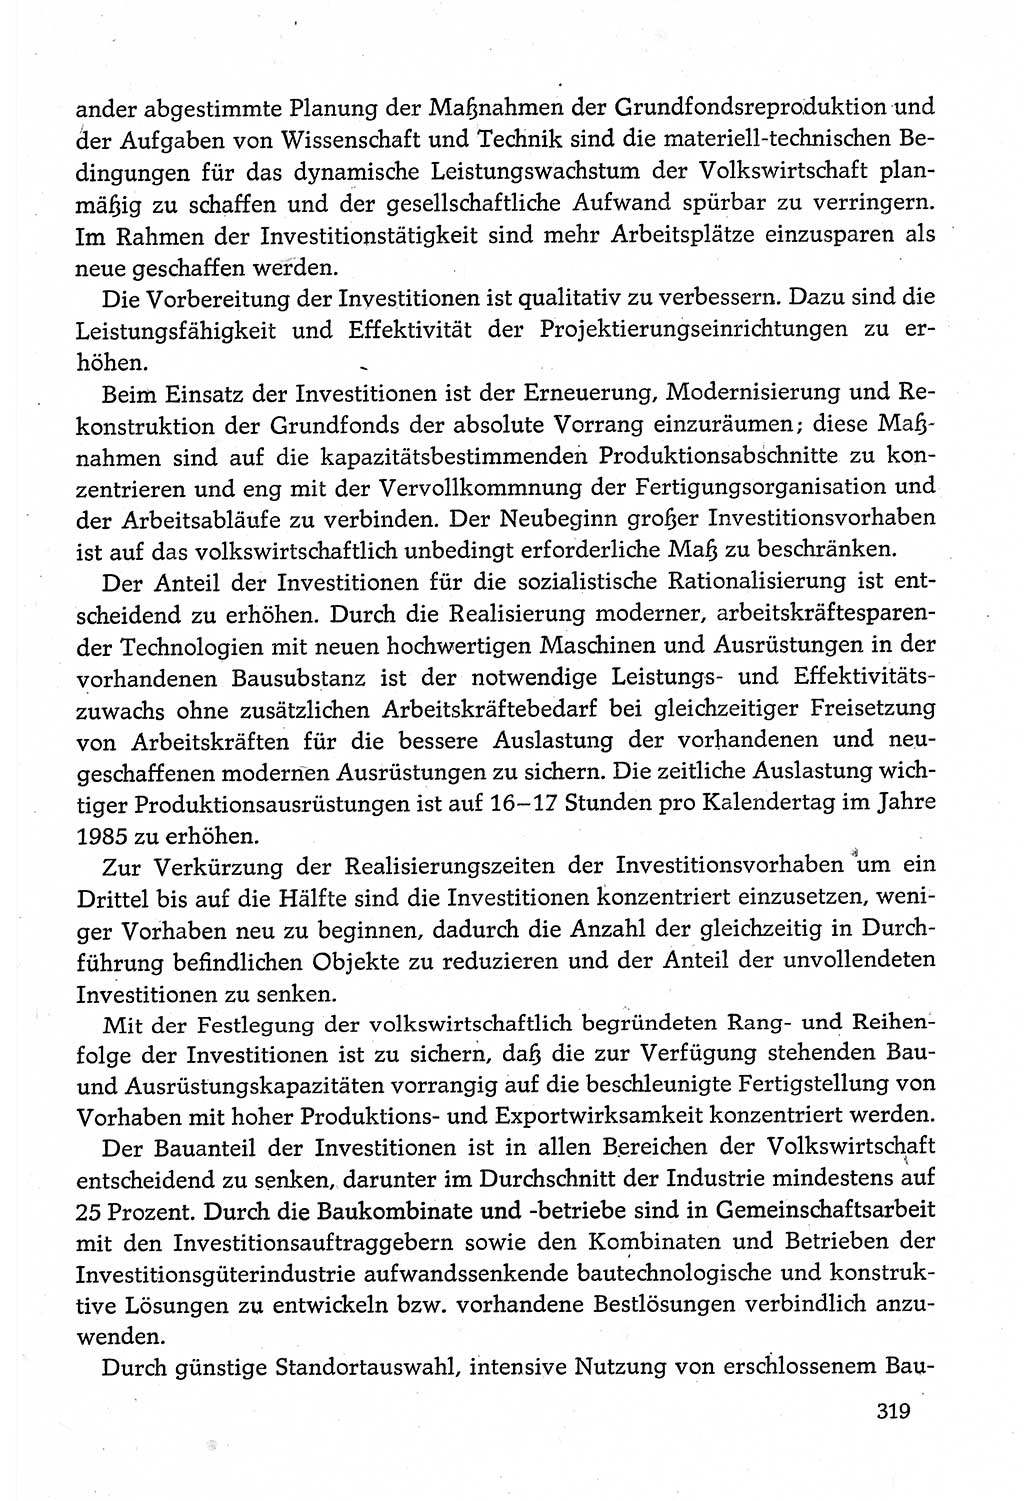 Dokumente der Sozialistischen Einheitspartei Deutschlands (SED) [Deutsche Demokratische Republik (DDR)] 1980-1981, Seite 319 (Dok. SED DDR 1980-1981, S. 319)